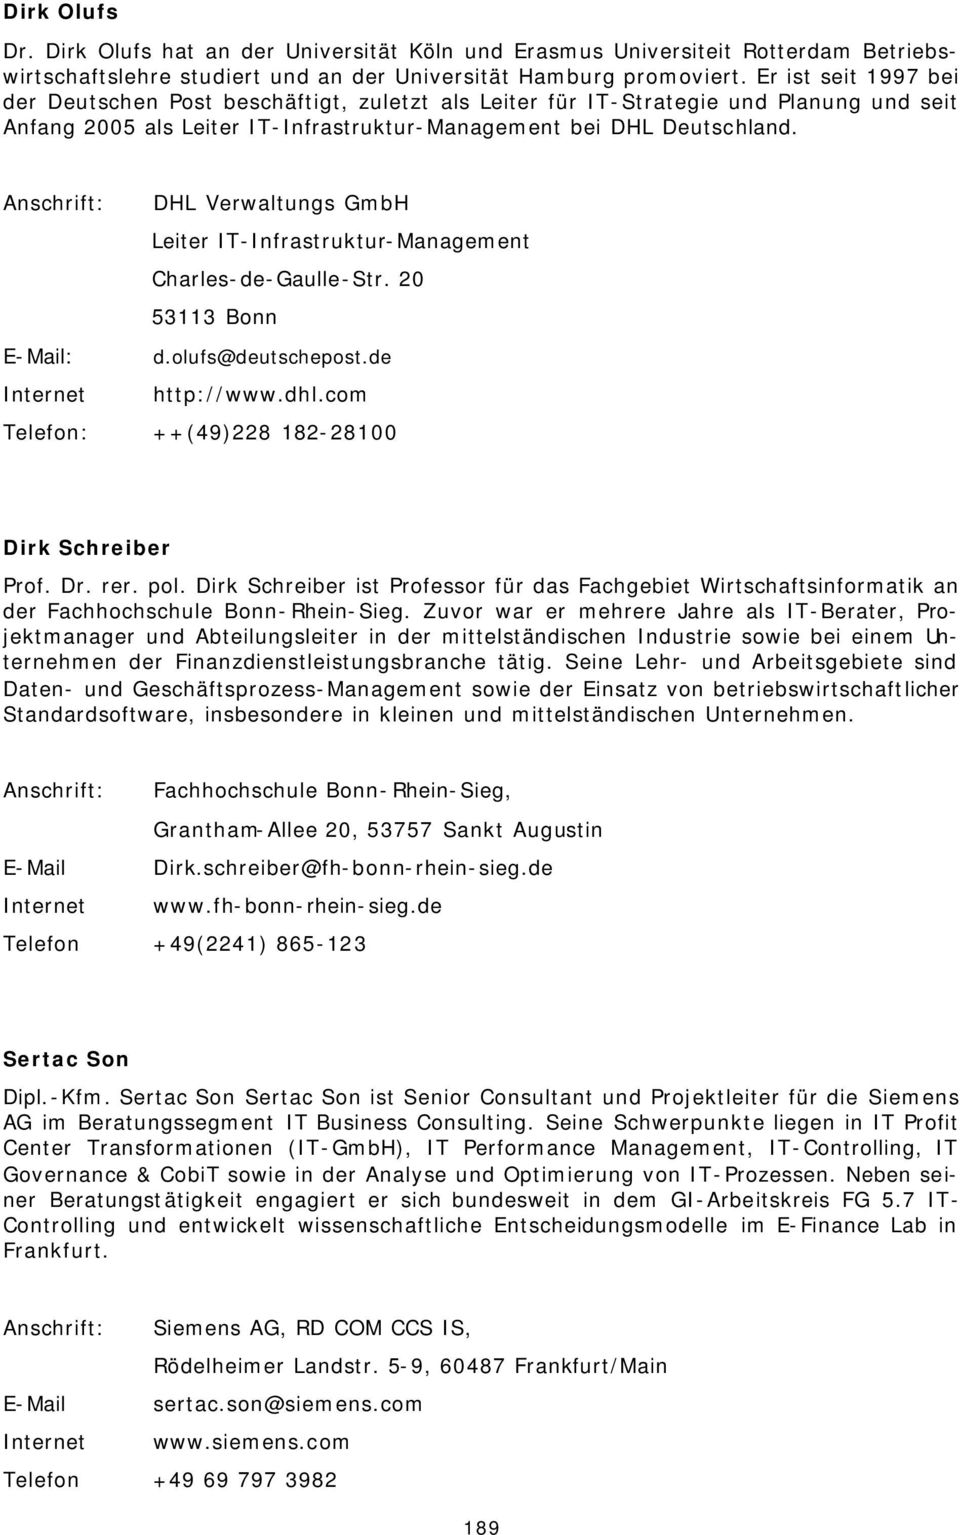 Anschrift: DHL Verwaltungs GmbH Leiter IT-Infrastruktur-Management Charles-de-Gaulle-Str. 20 53113 Bonn E-Mail: d.olufs@deutschepost.de Internet http://www.dhl.